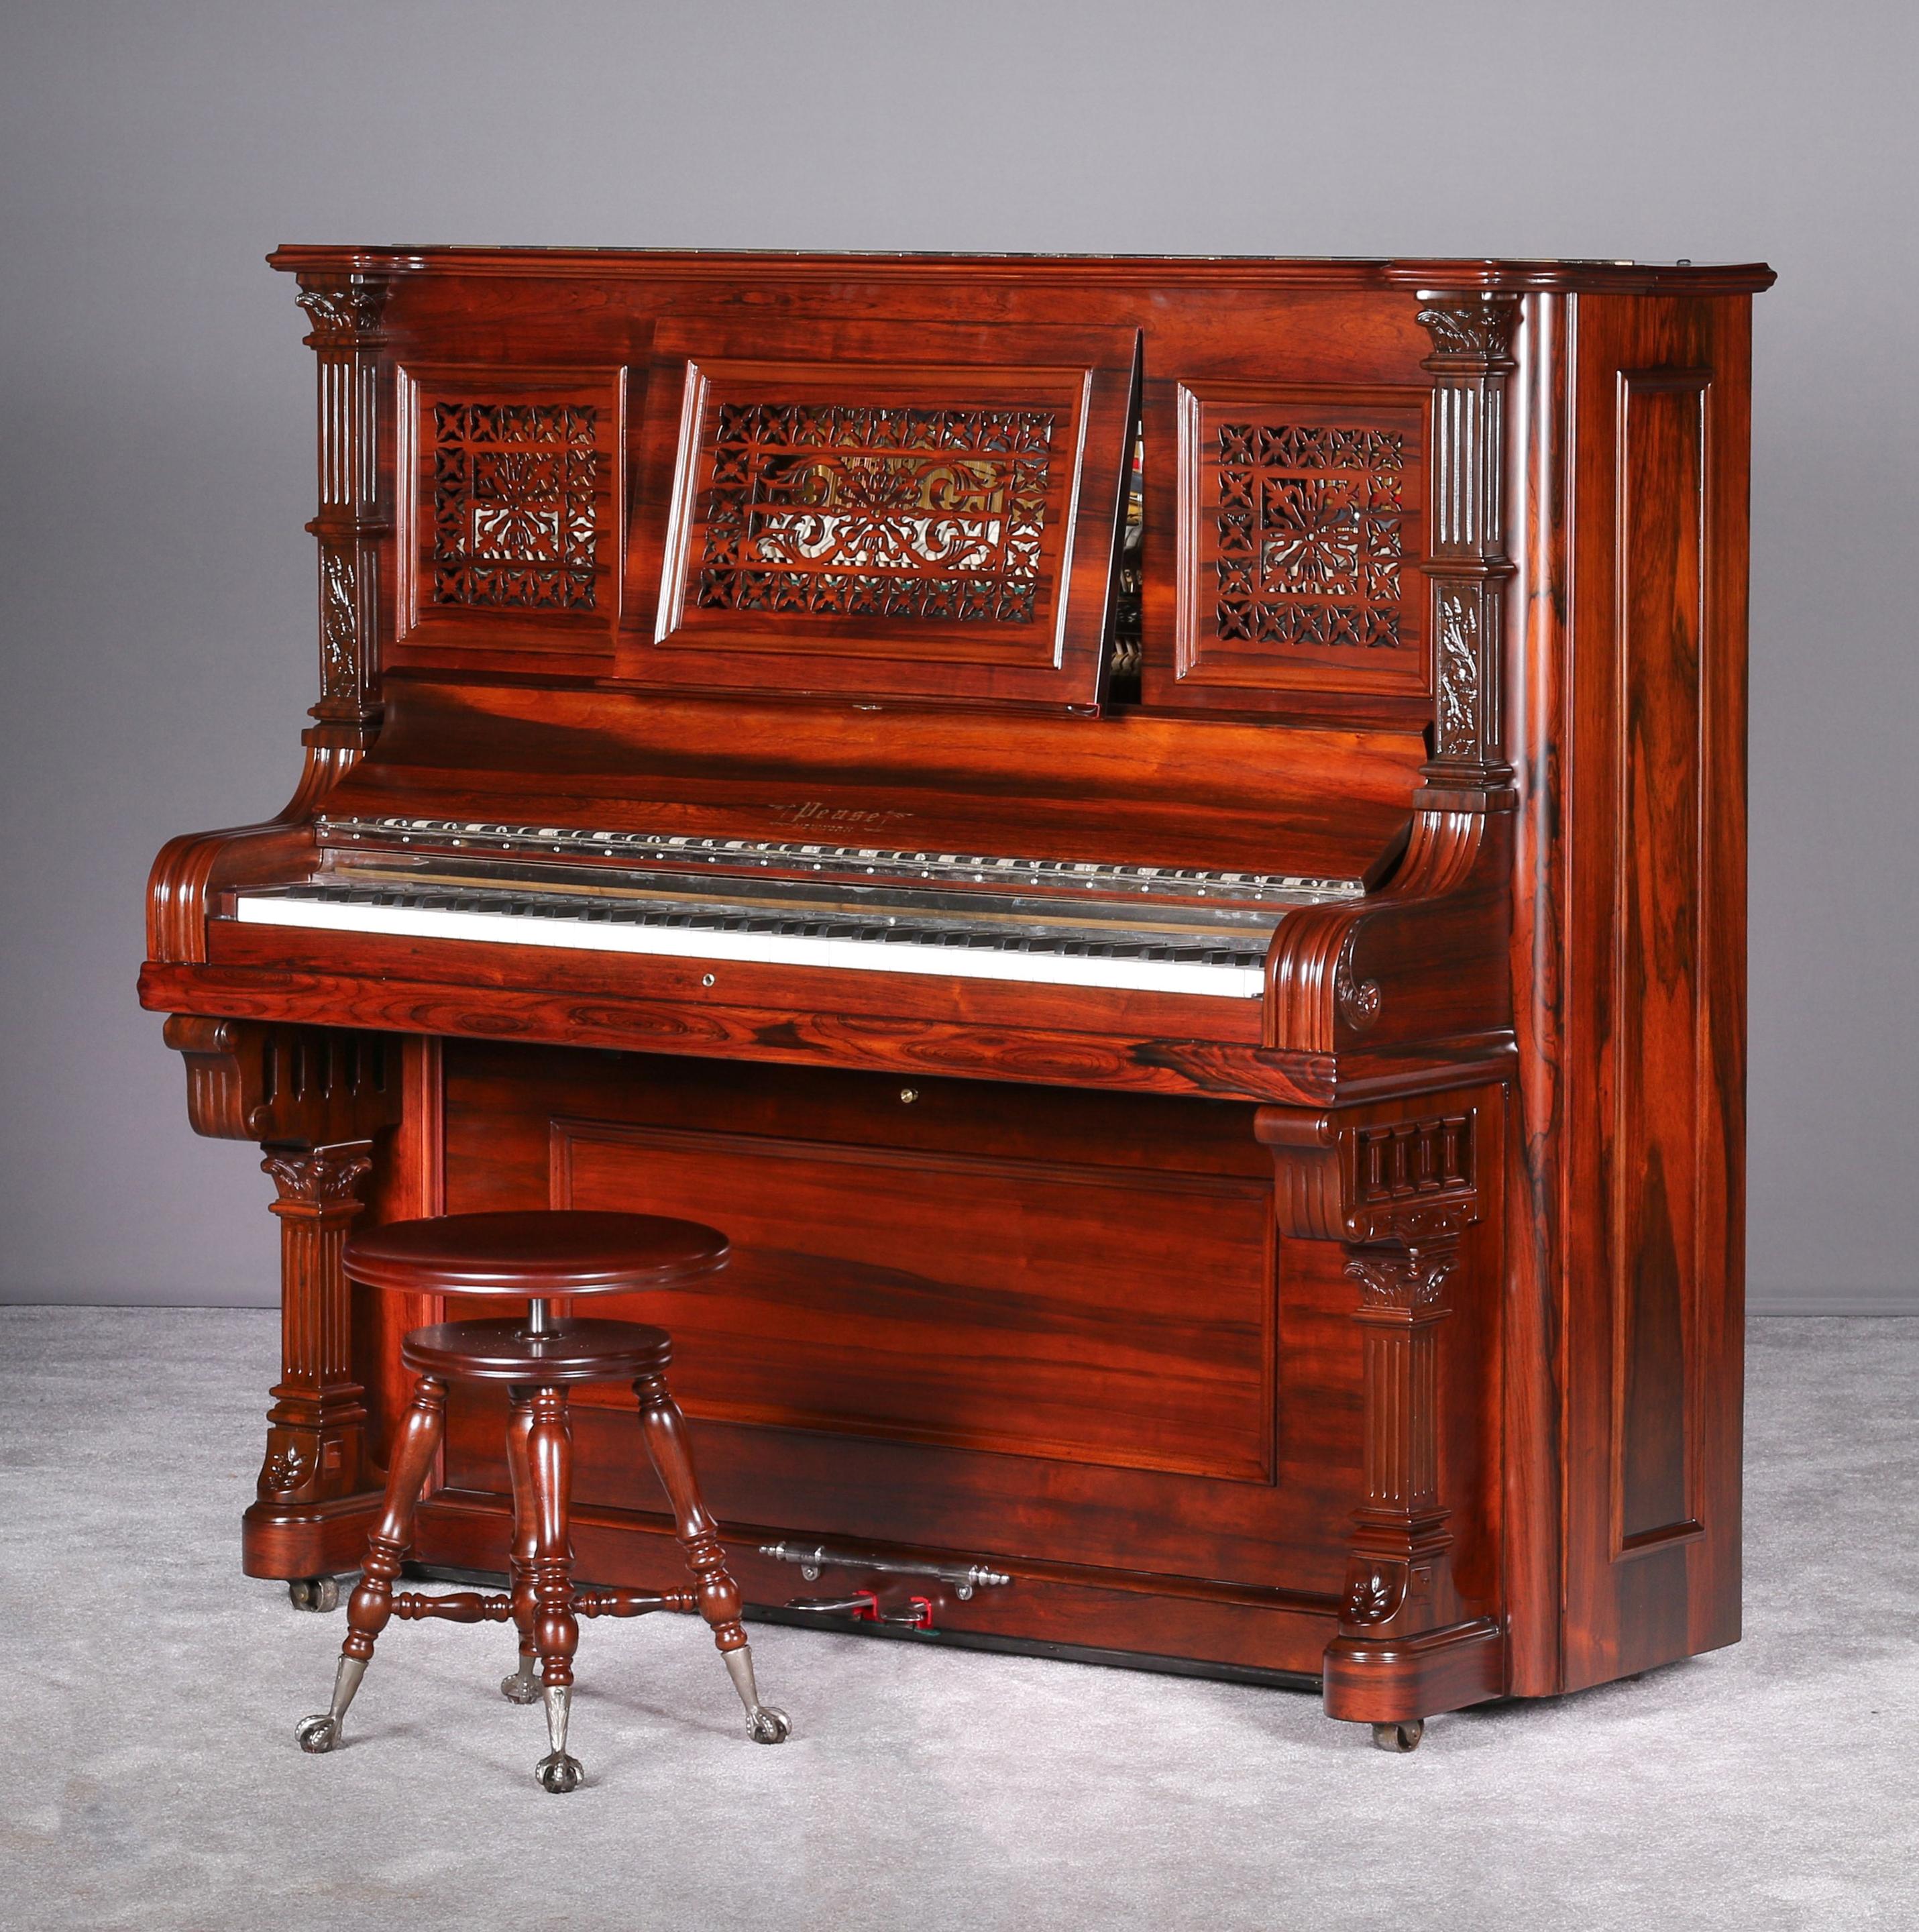 Vollständig restauriertes Pease Upright Klavier, 1891